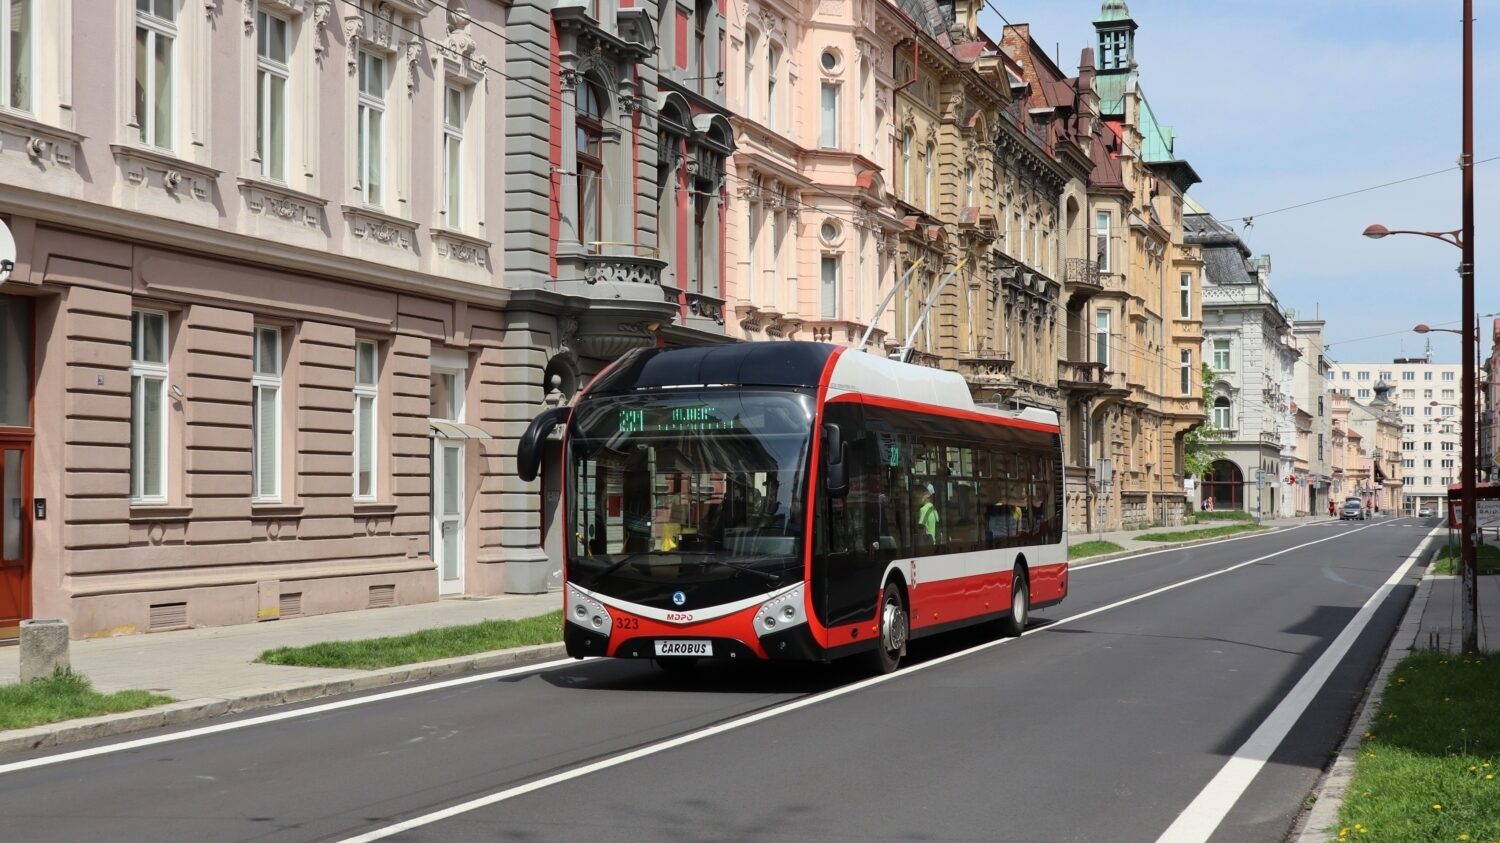 Poslední soutěže na dodávku nových trolejbusů ovládla Škoda Electric s modelem 32 Tr. Celkem je v Opavě již 15 těchto trolejbusů, z nichž deset je řešeno jako parciální. Na snímku projíždí poslední dodaný parciální trolejbus ev. č. 323 z roku 2018 Olomouckou ulicí. (foto: Bc. Vojtěch Jandásek)